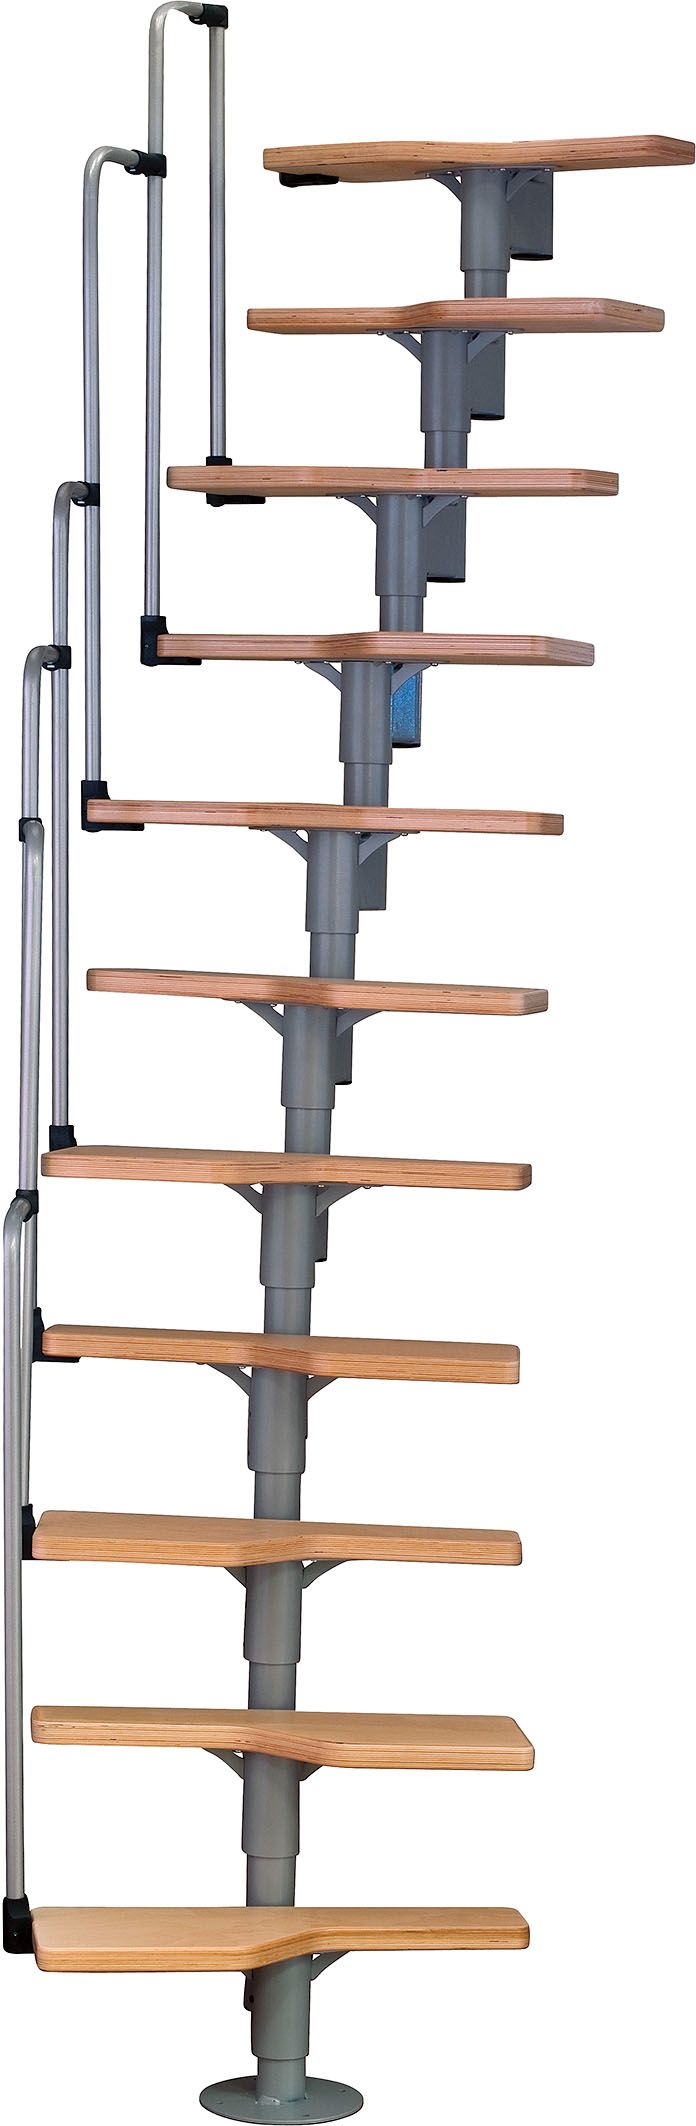 Schody Pertura prostorově úsporné, vyrobené ze dřeva a kovu. Vhodné jako vedlejší schodiště v interiéru. Výška patra 200 až 294 cm. Cena 9490 Kč.